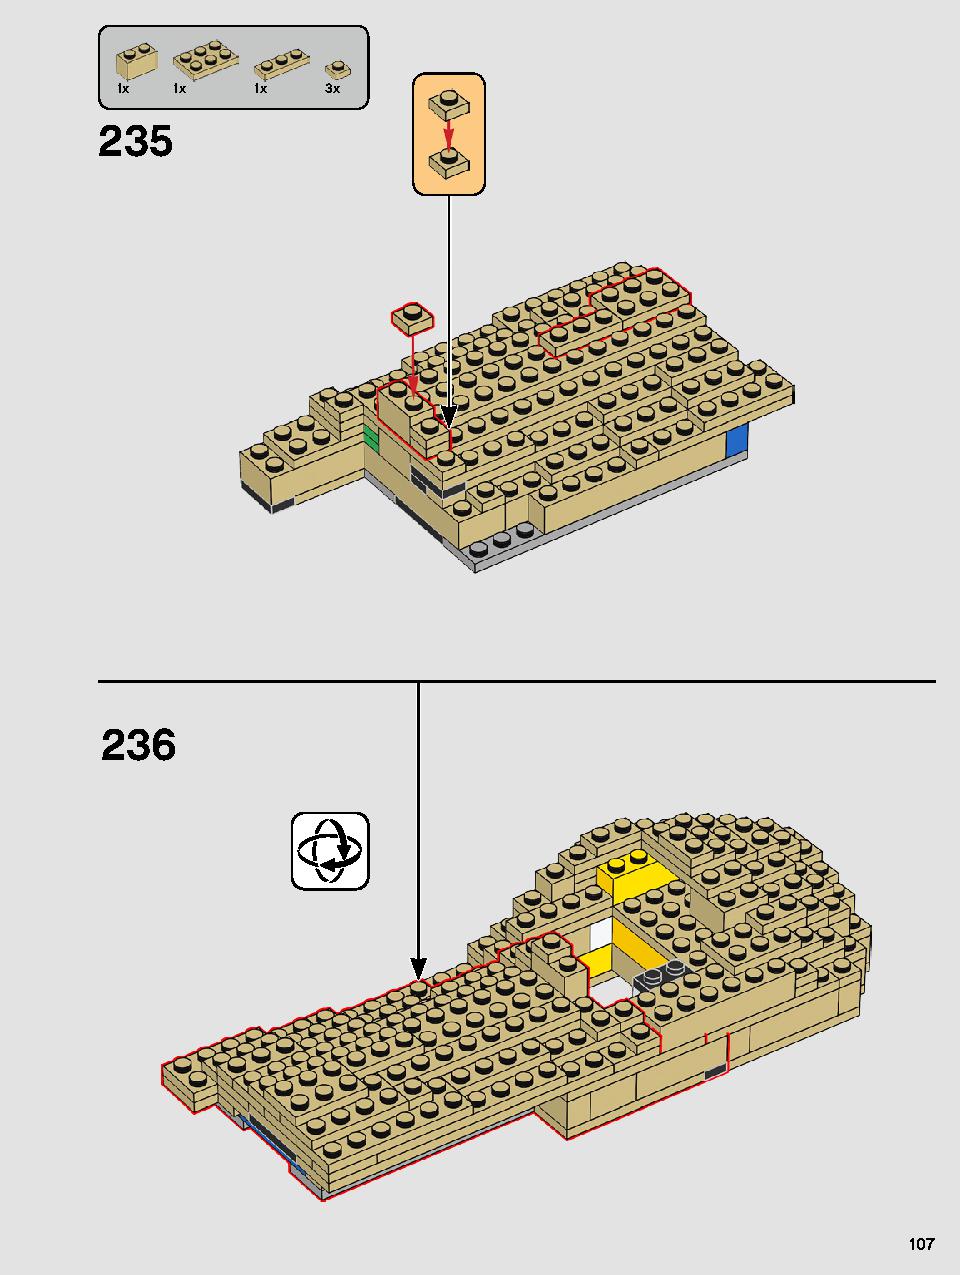 ヨーダ™ 75255 レゴの商品情報 レゴの説明書・組立方法 107 page